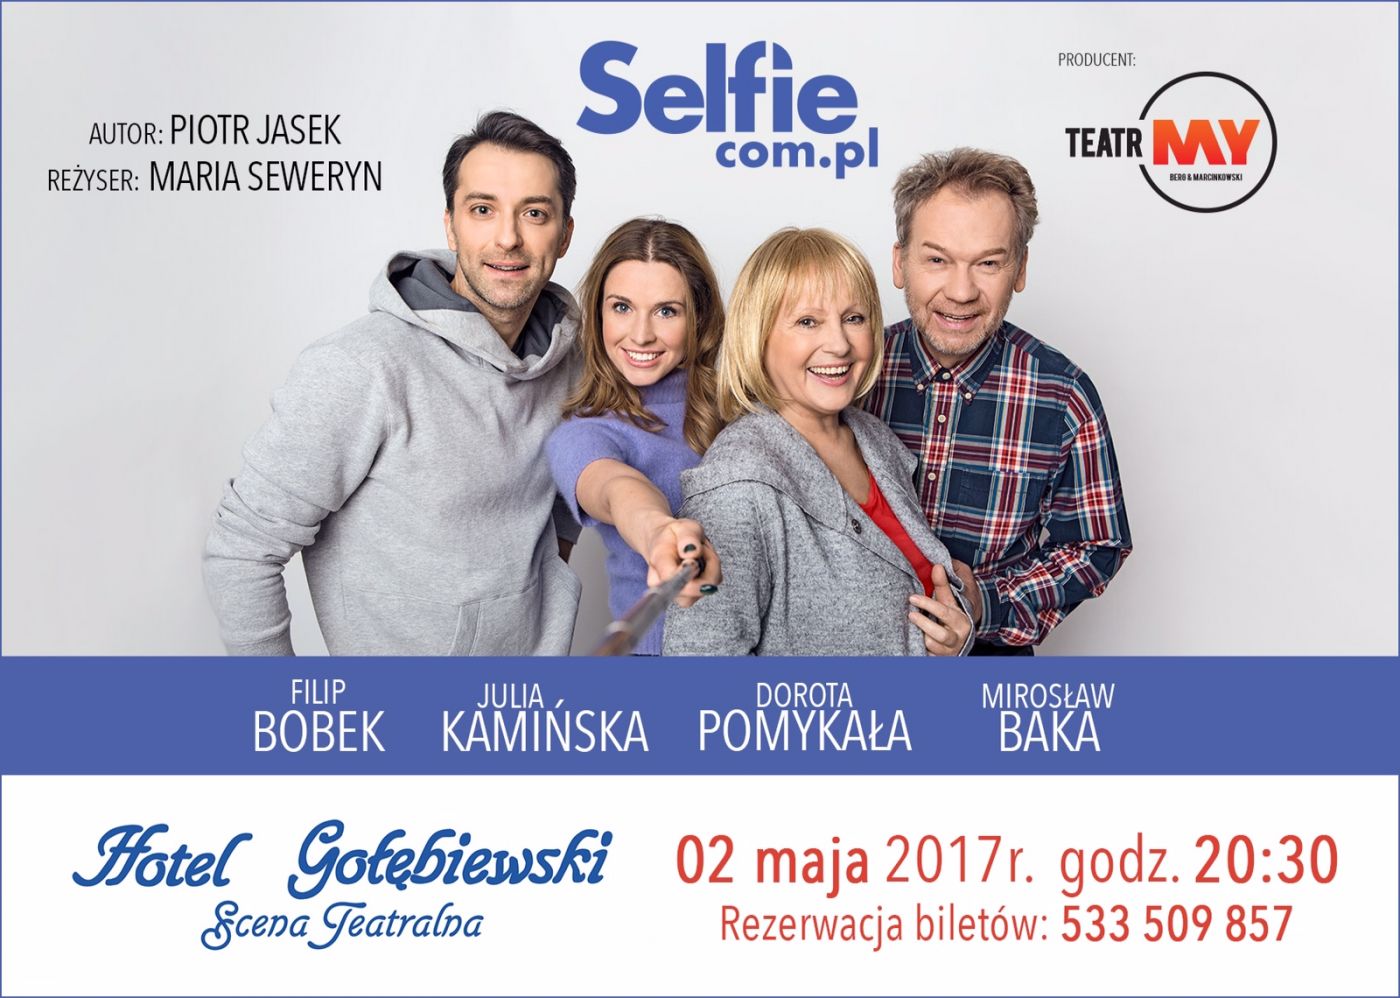 Spektakl SELFIE.com.pl